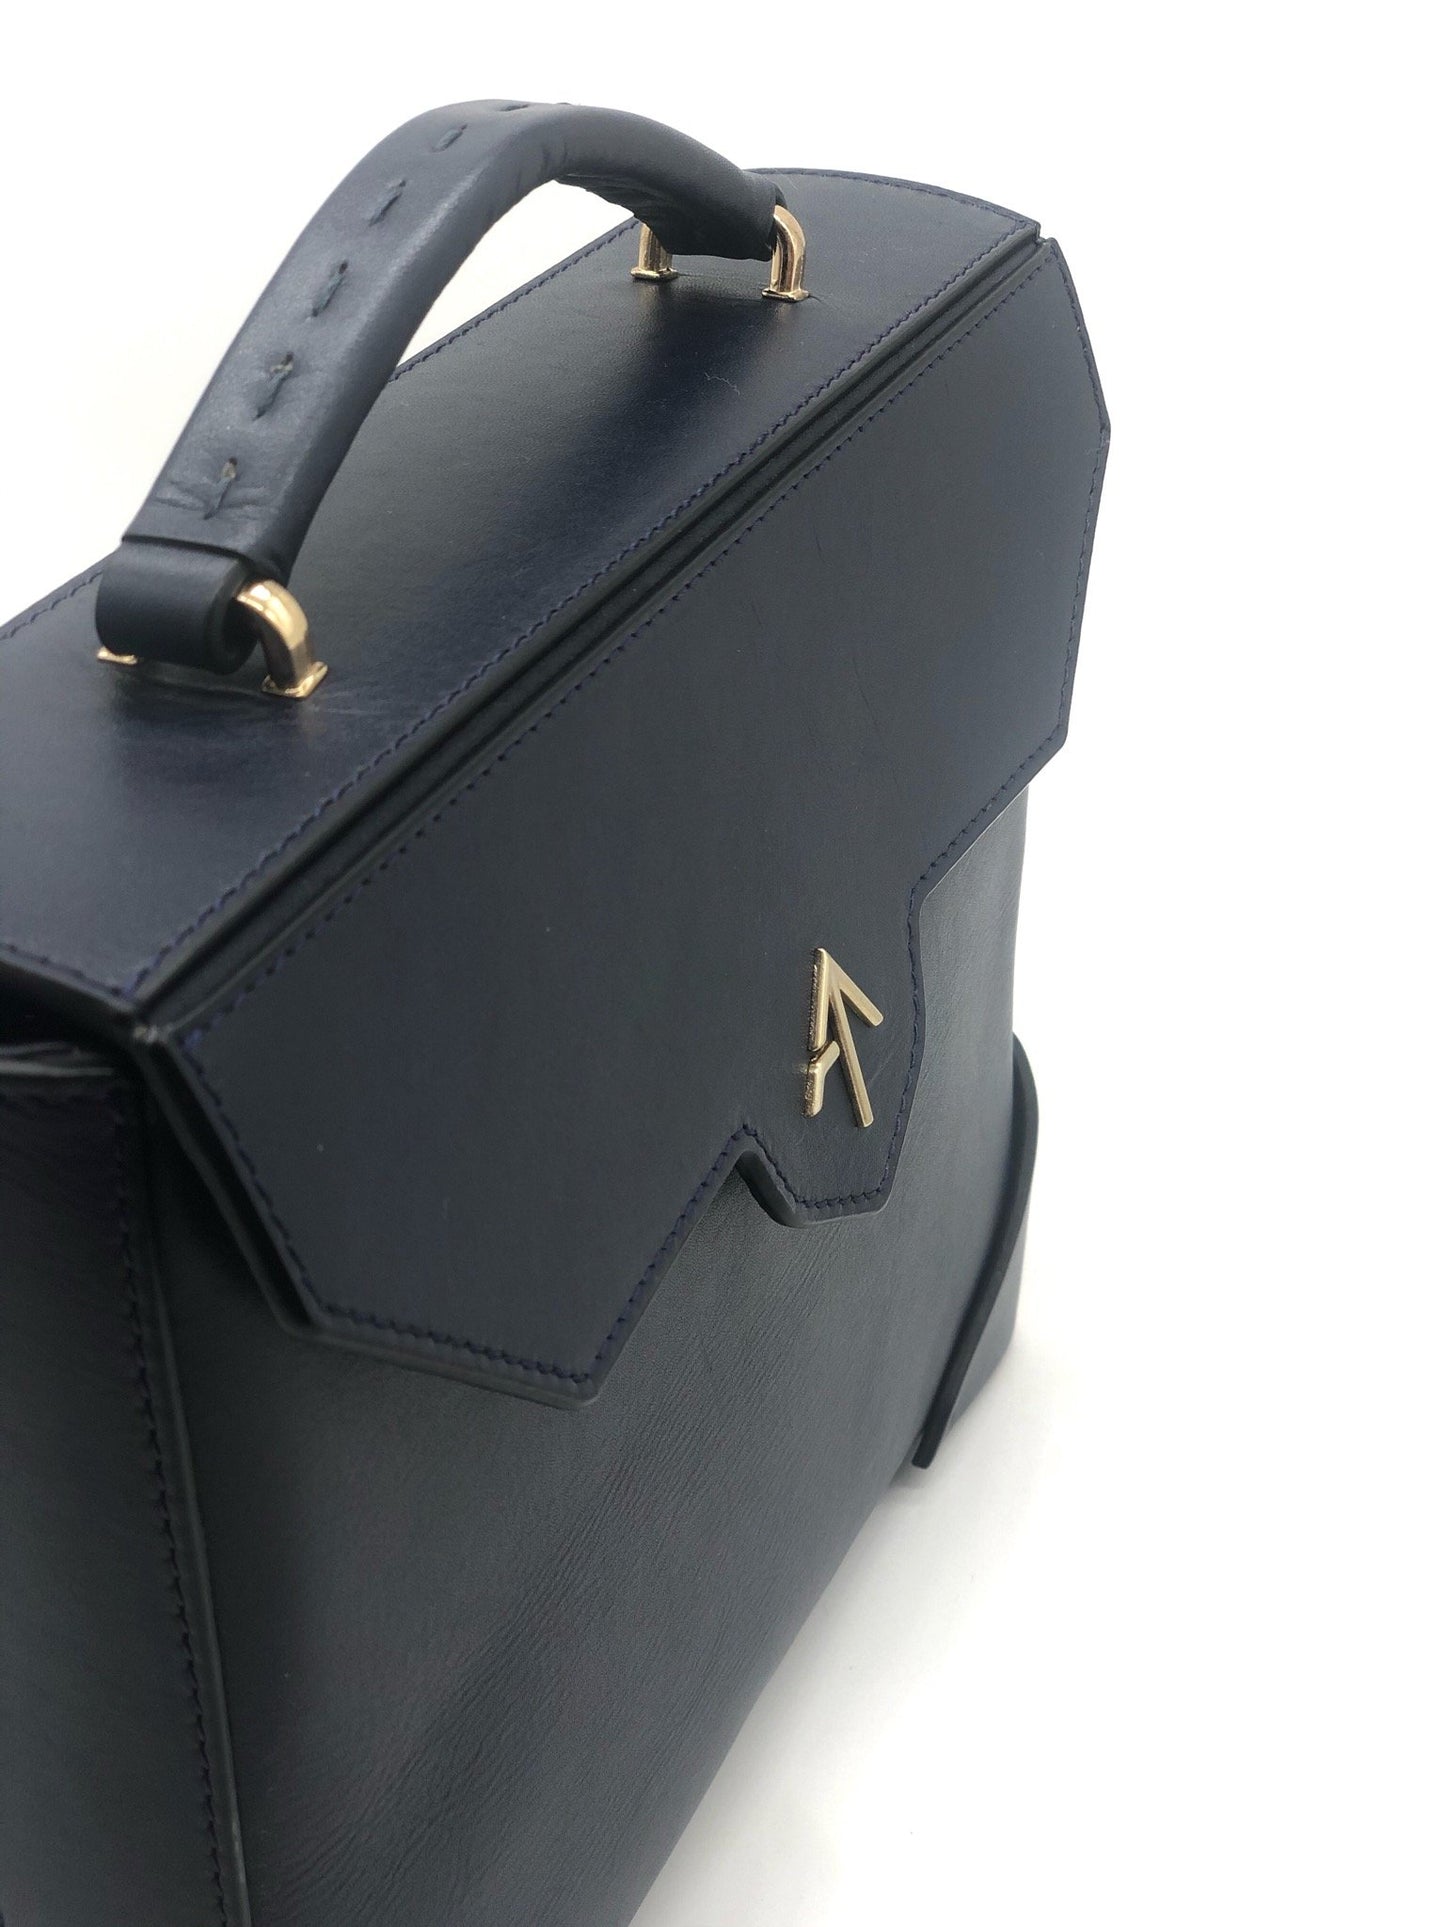 Manu Atelier Mini Bold Leather Box Bag